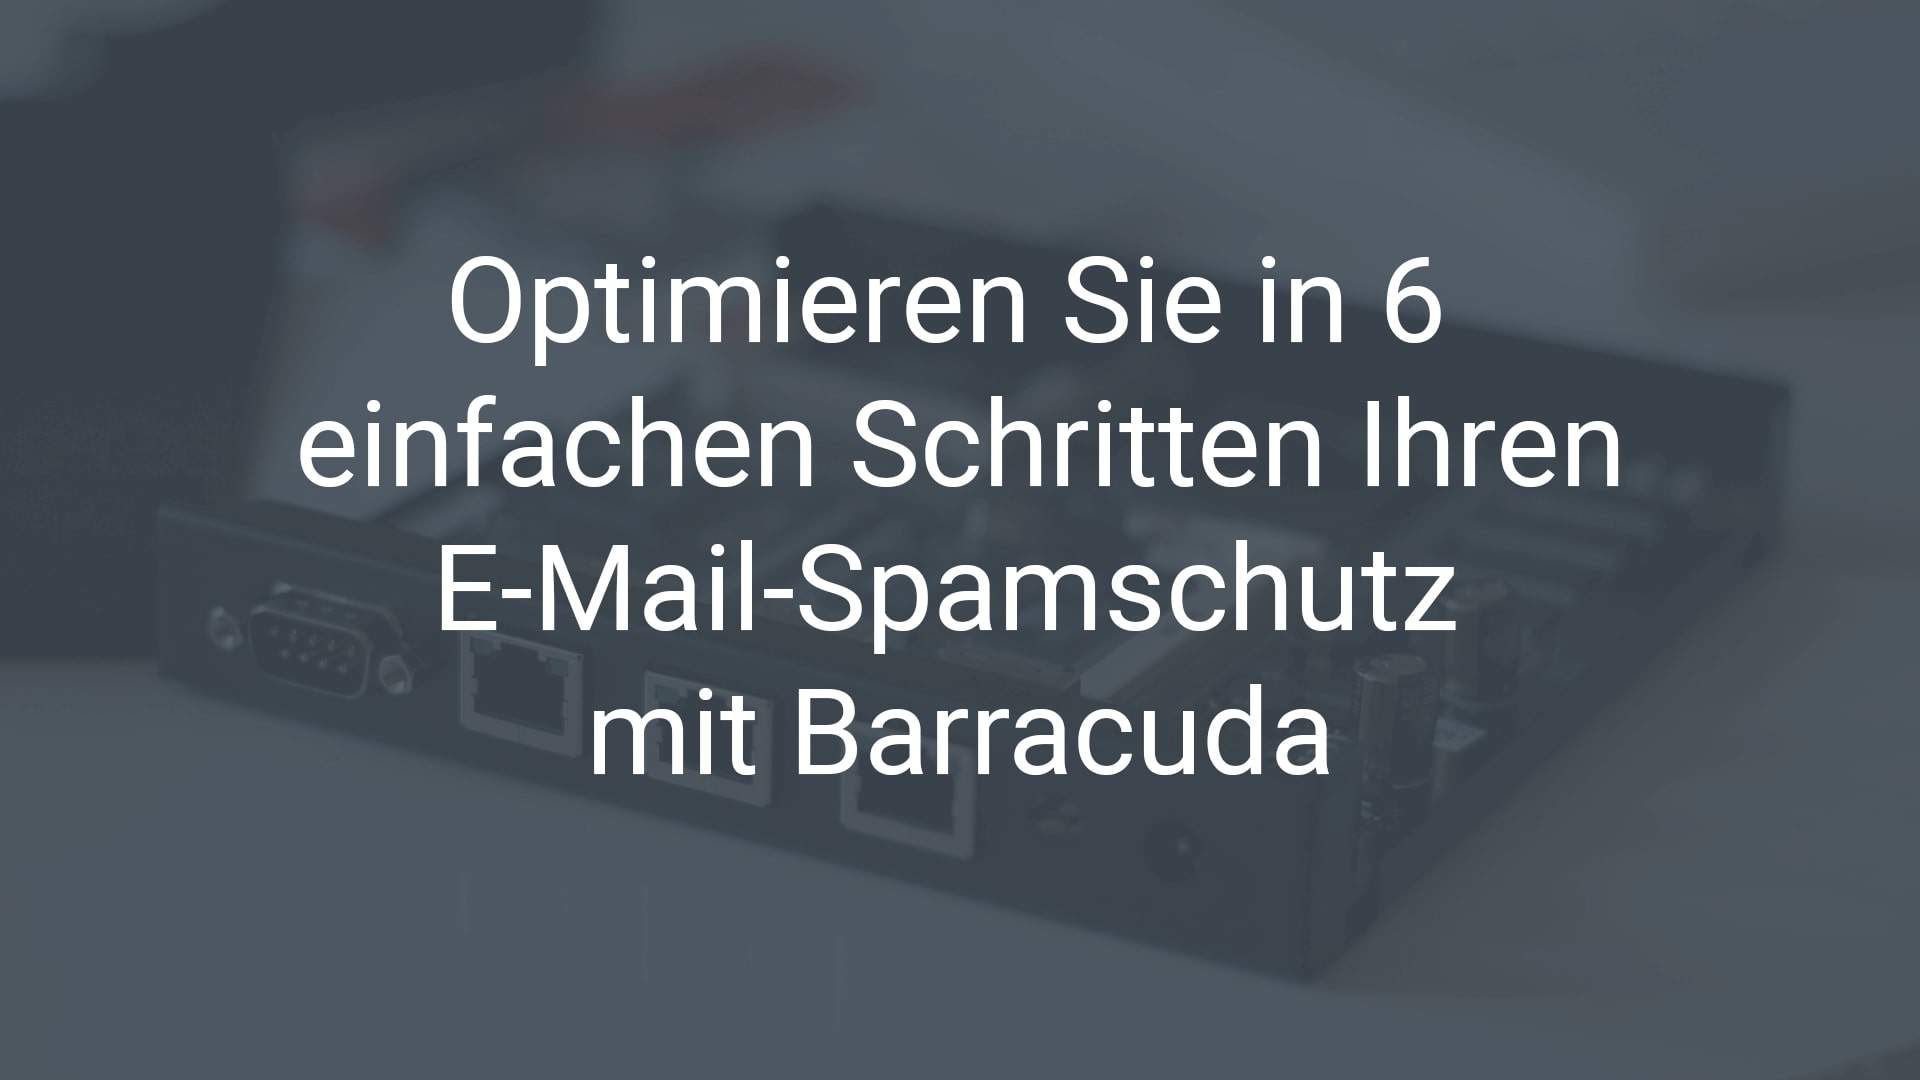 Optimieren Sie in 6 einfachen Schritten Ihren E-Mail-Spamschutz mit Barracuda. Wir zeigen, wie es geht.